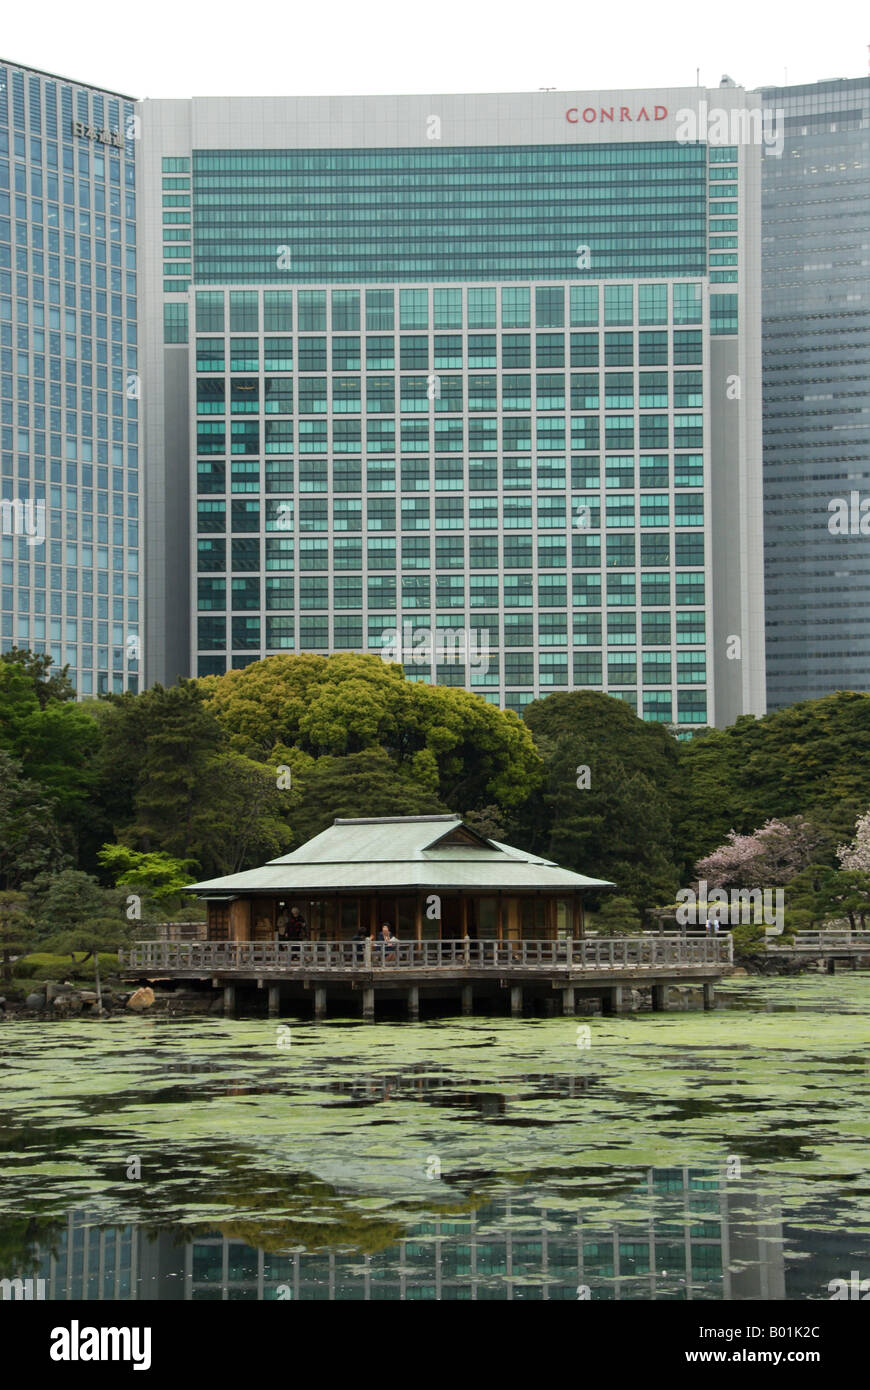 Hamarikyu Garden's Nakajima no chaya tea house with the Conrad hotel in the background, Tokyo, Japan. Stock Photo